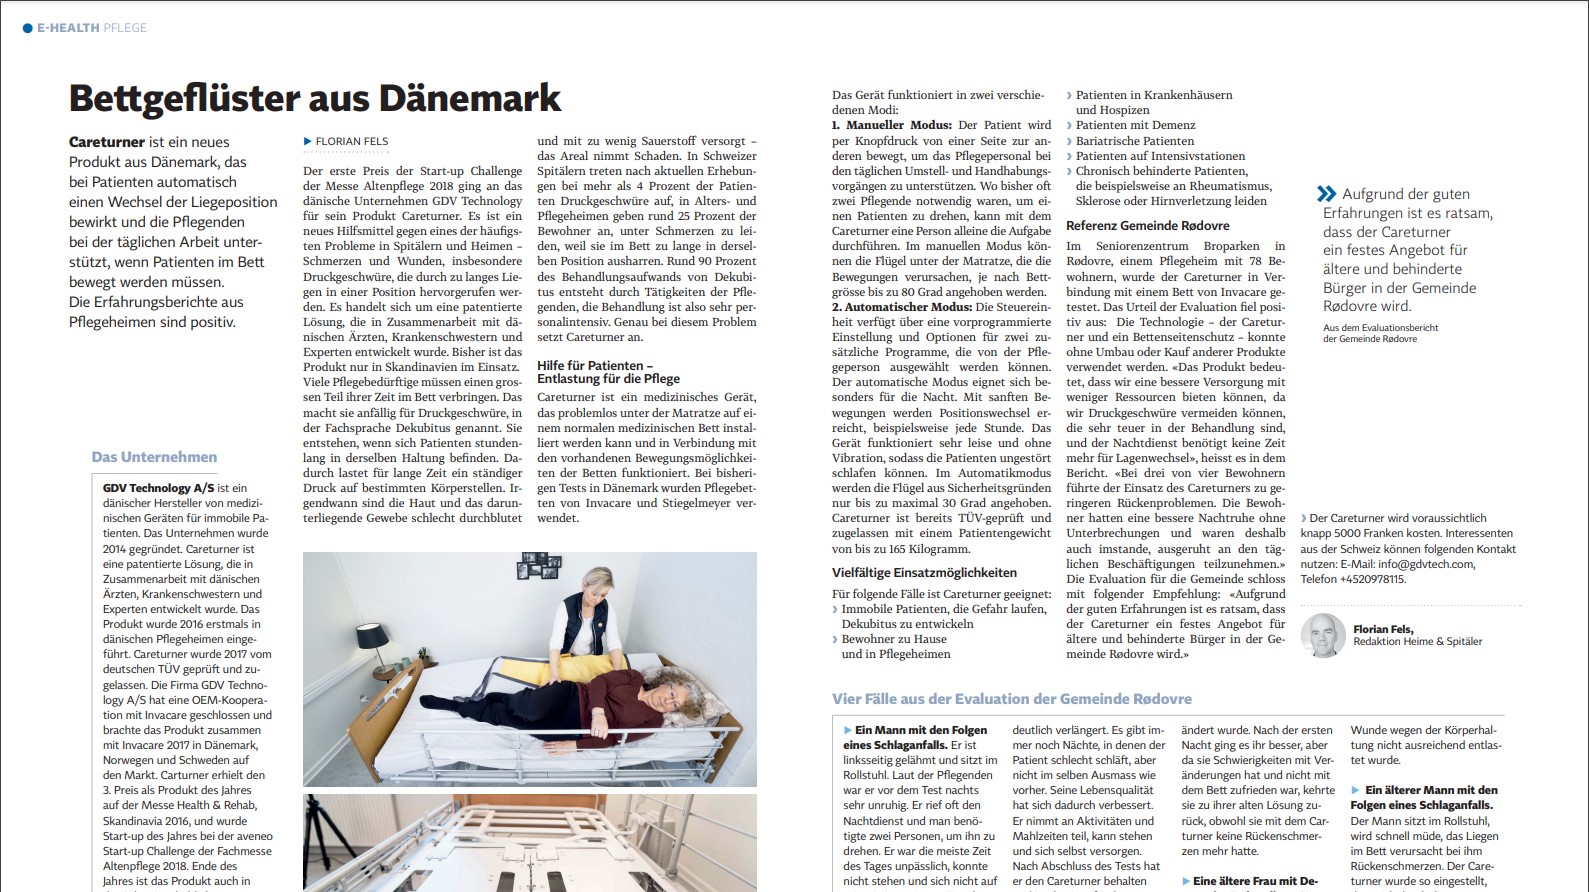 Innovative nursing bed solution from Denmark Innovative nursing bed solution from Denmark - Careturner A/S